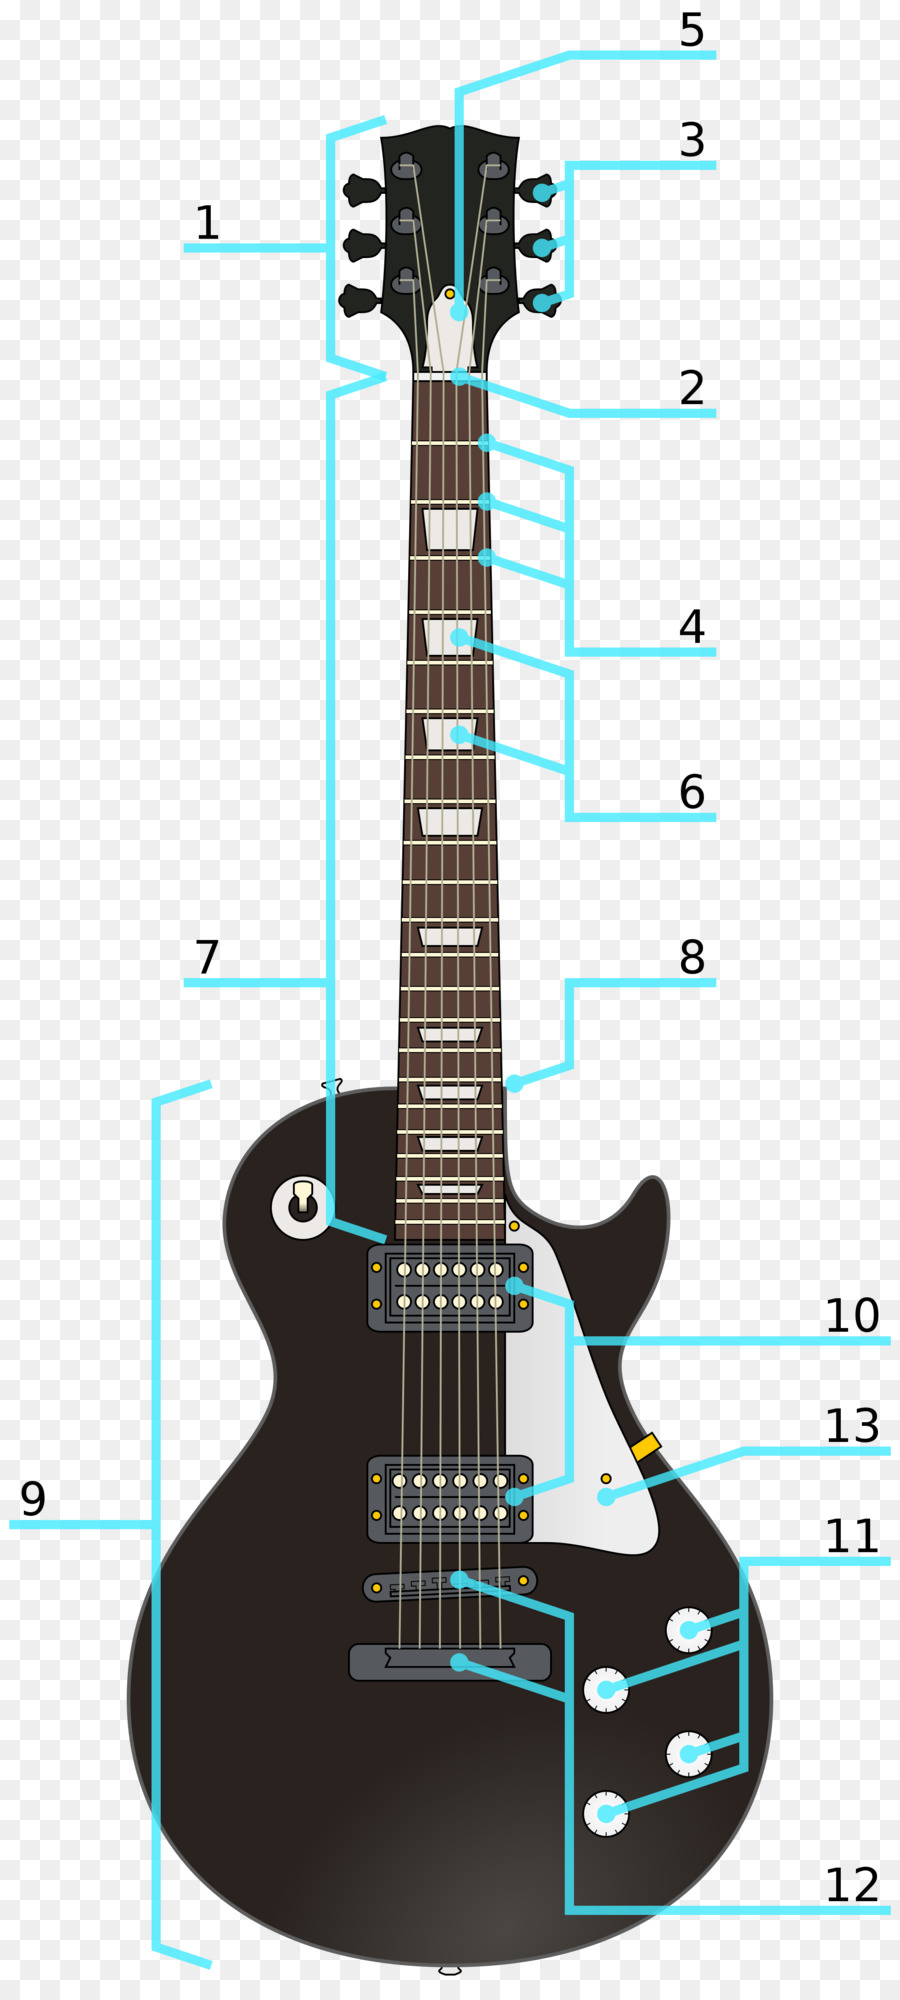 Gibson Les Paul Custom Gibson Les Paul Studio chitarra Elettrica Gibson Brands, Inc. - chitarra elettrica